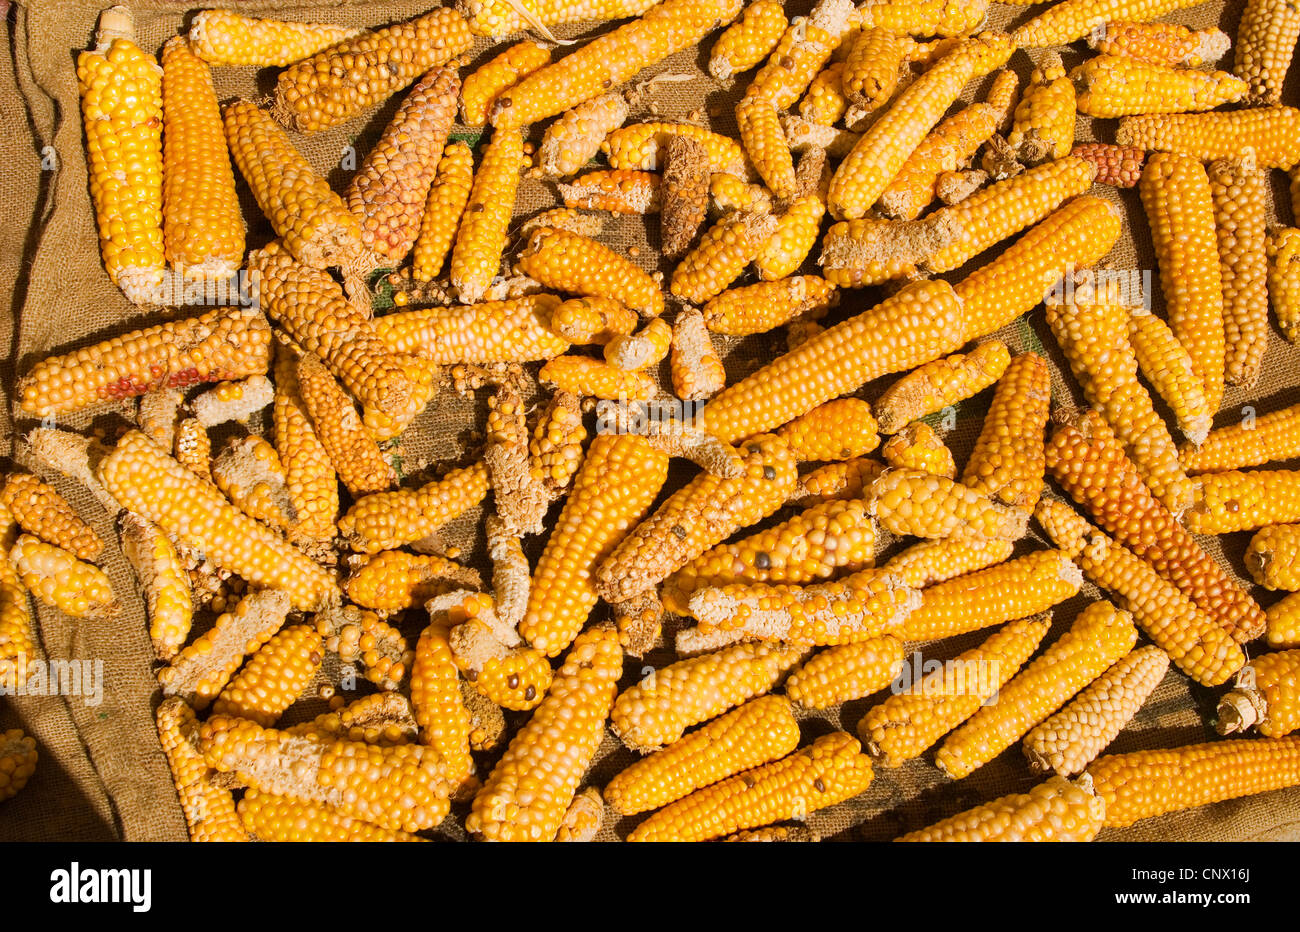 Le maïs est la base de l'alimentation des Mayas. Les épis de maïs sont mis  à sécher avant de les grains sont séchés et moulus pour faire des tortillas  Photo Stock -